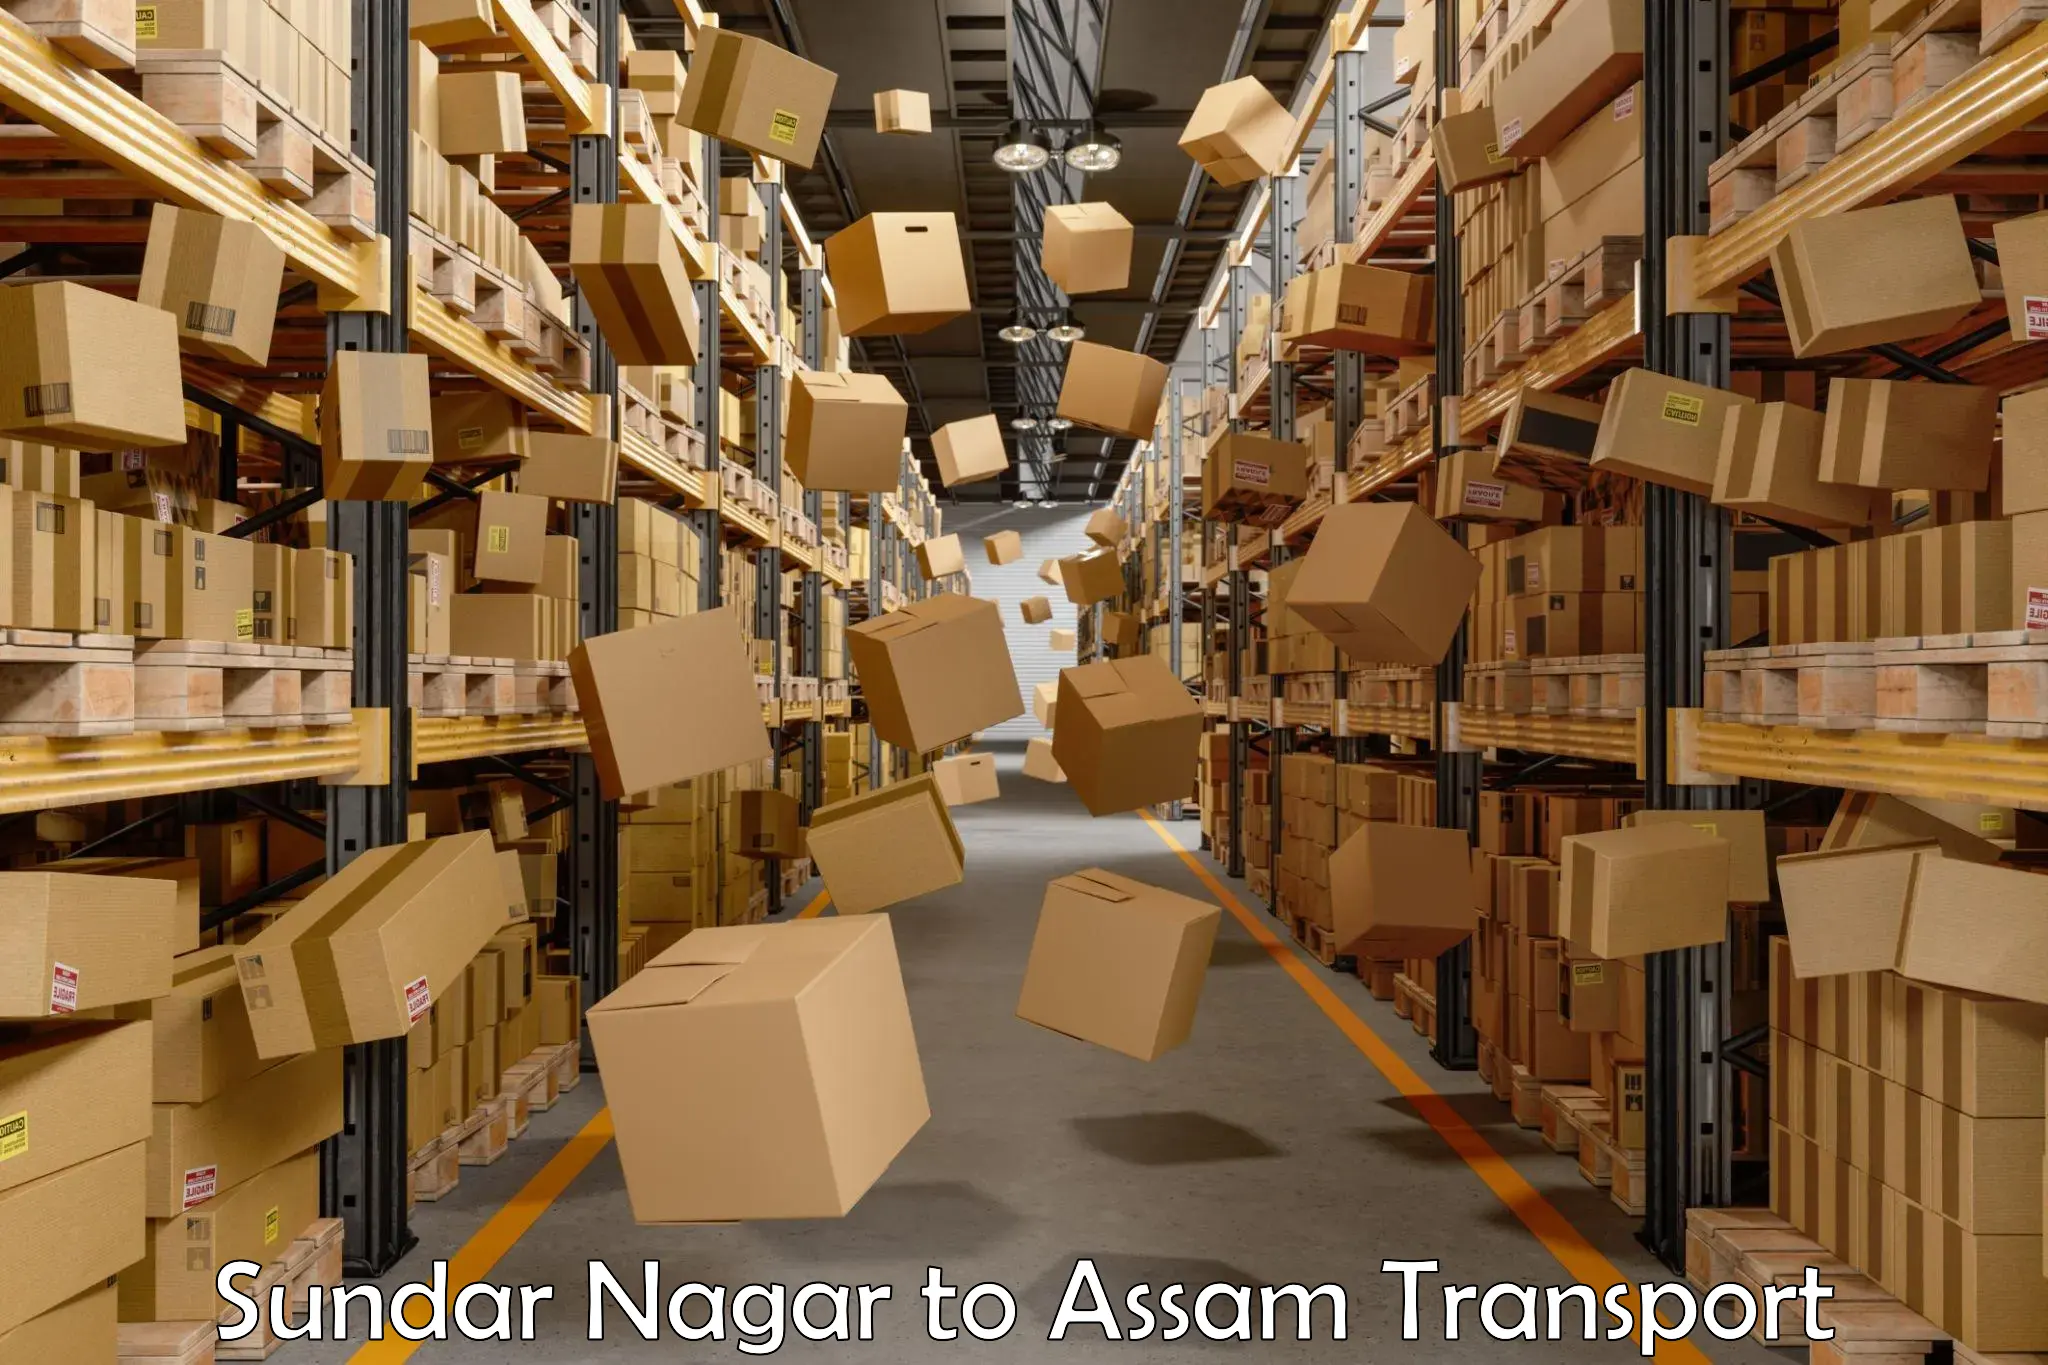 Road transport online services Sundar Nagar to Assam